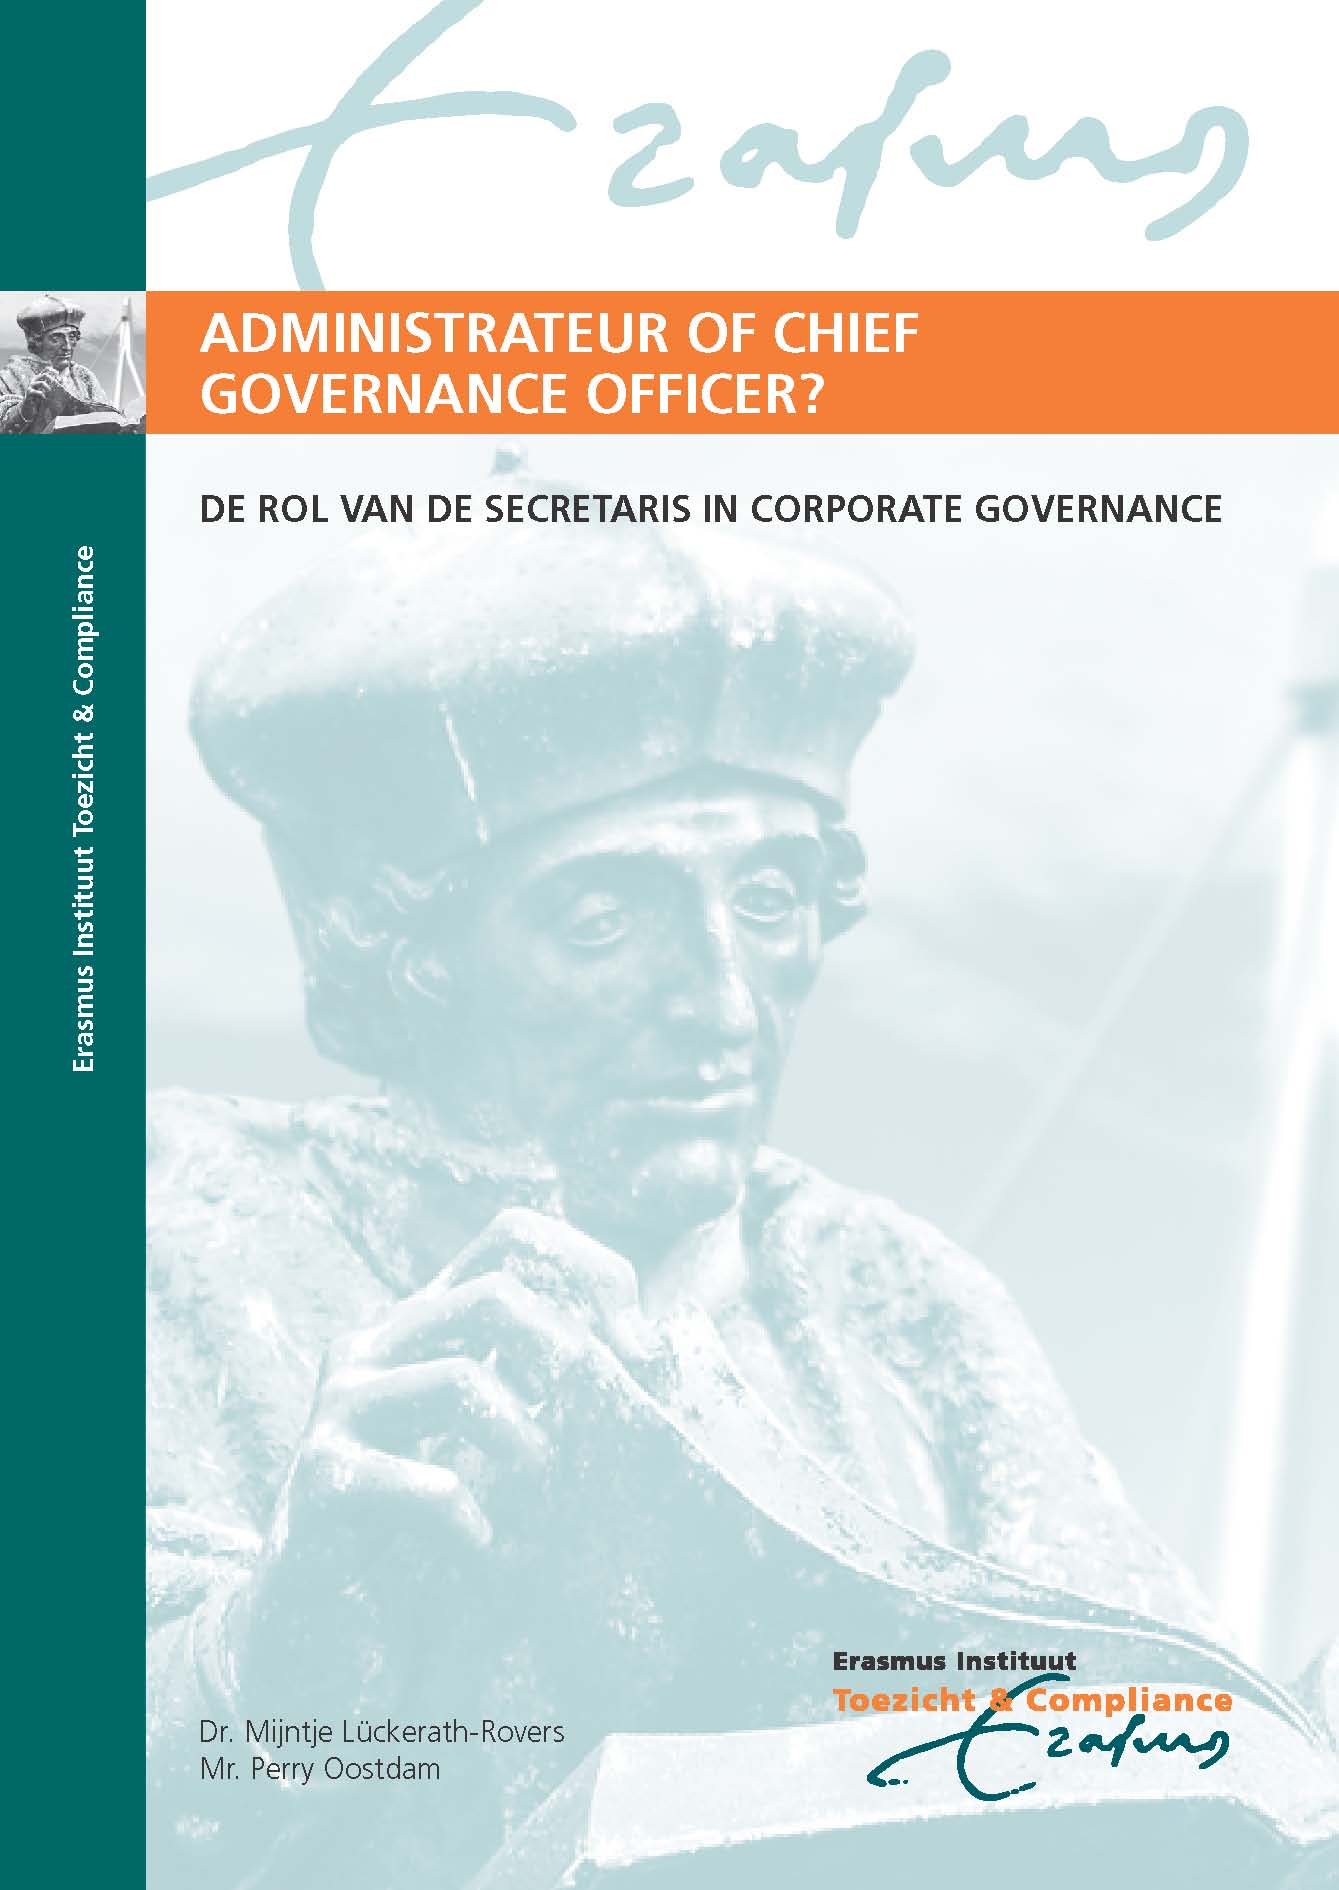 Plaatje bij Administrateur of Chief Governance Officer: De rol van de secretaris in Corporate Governance